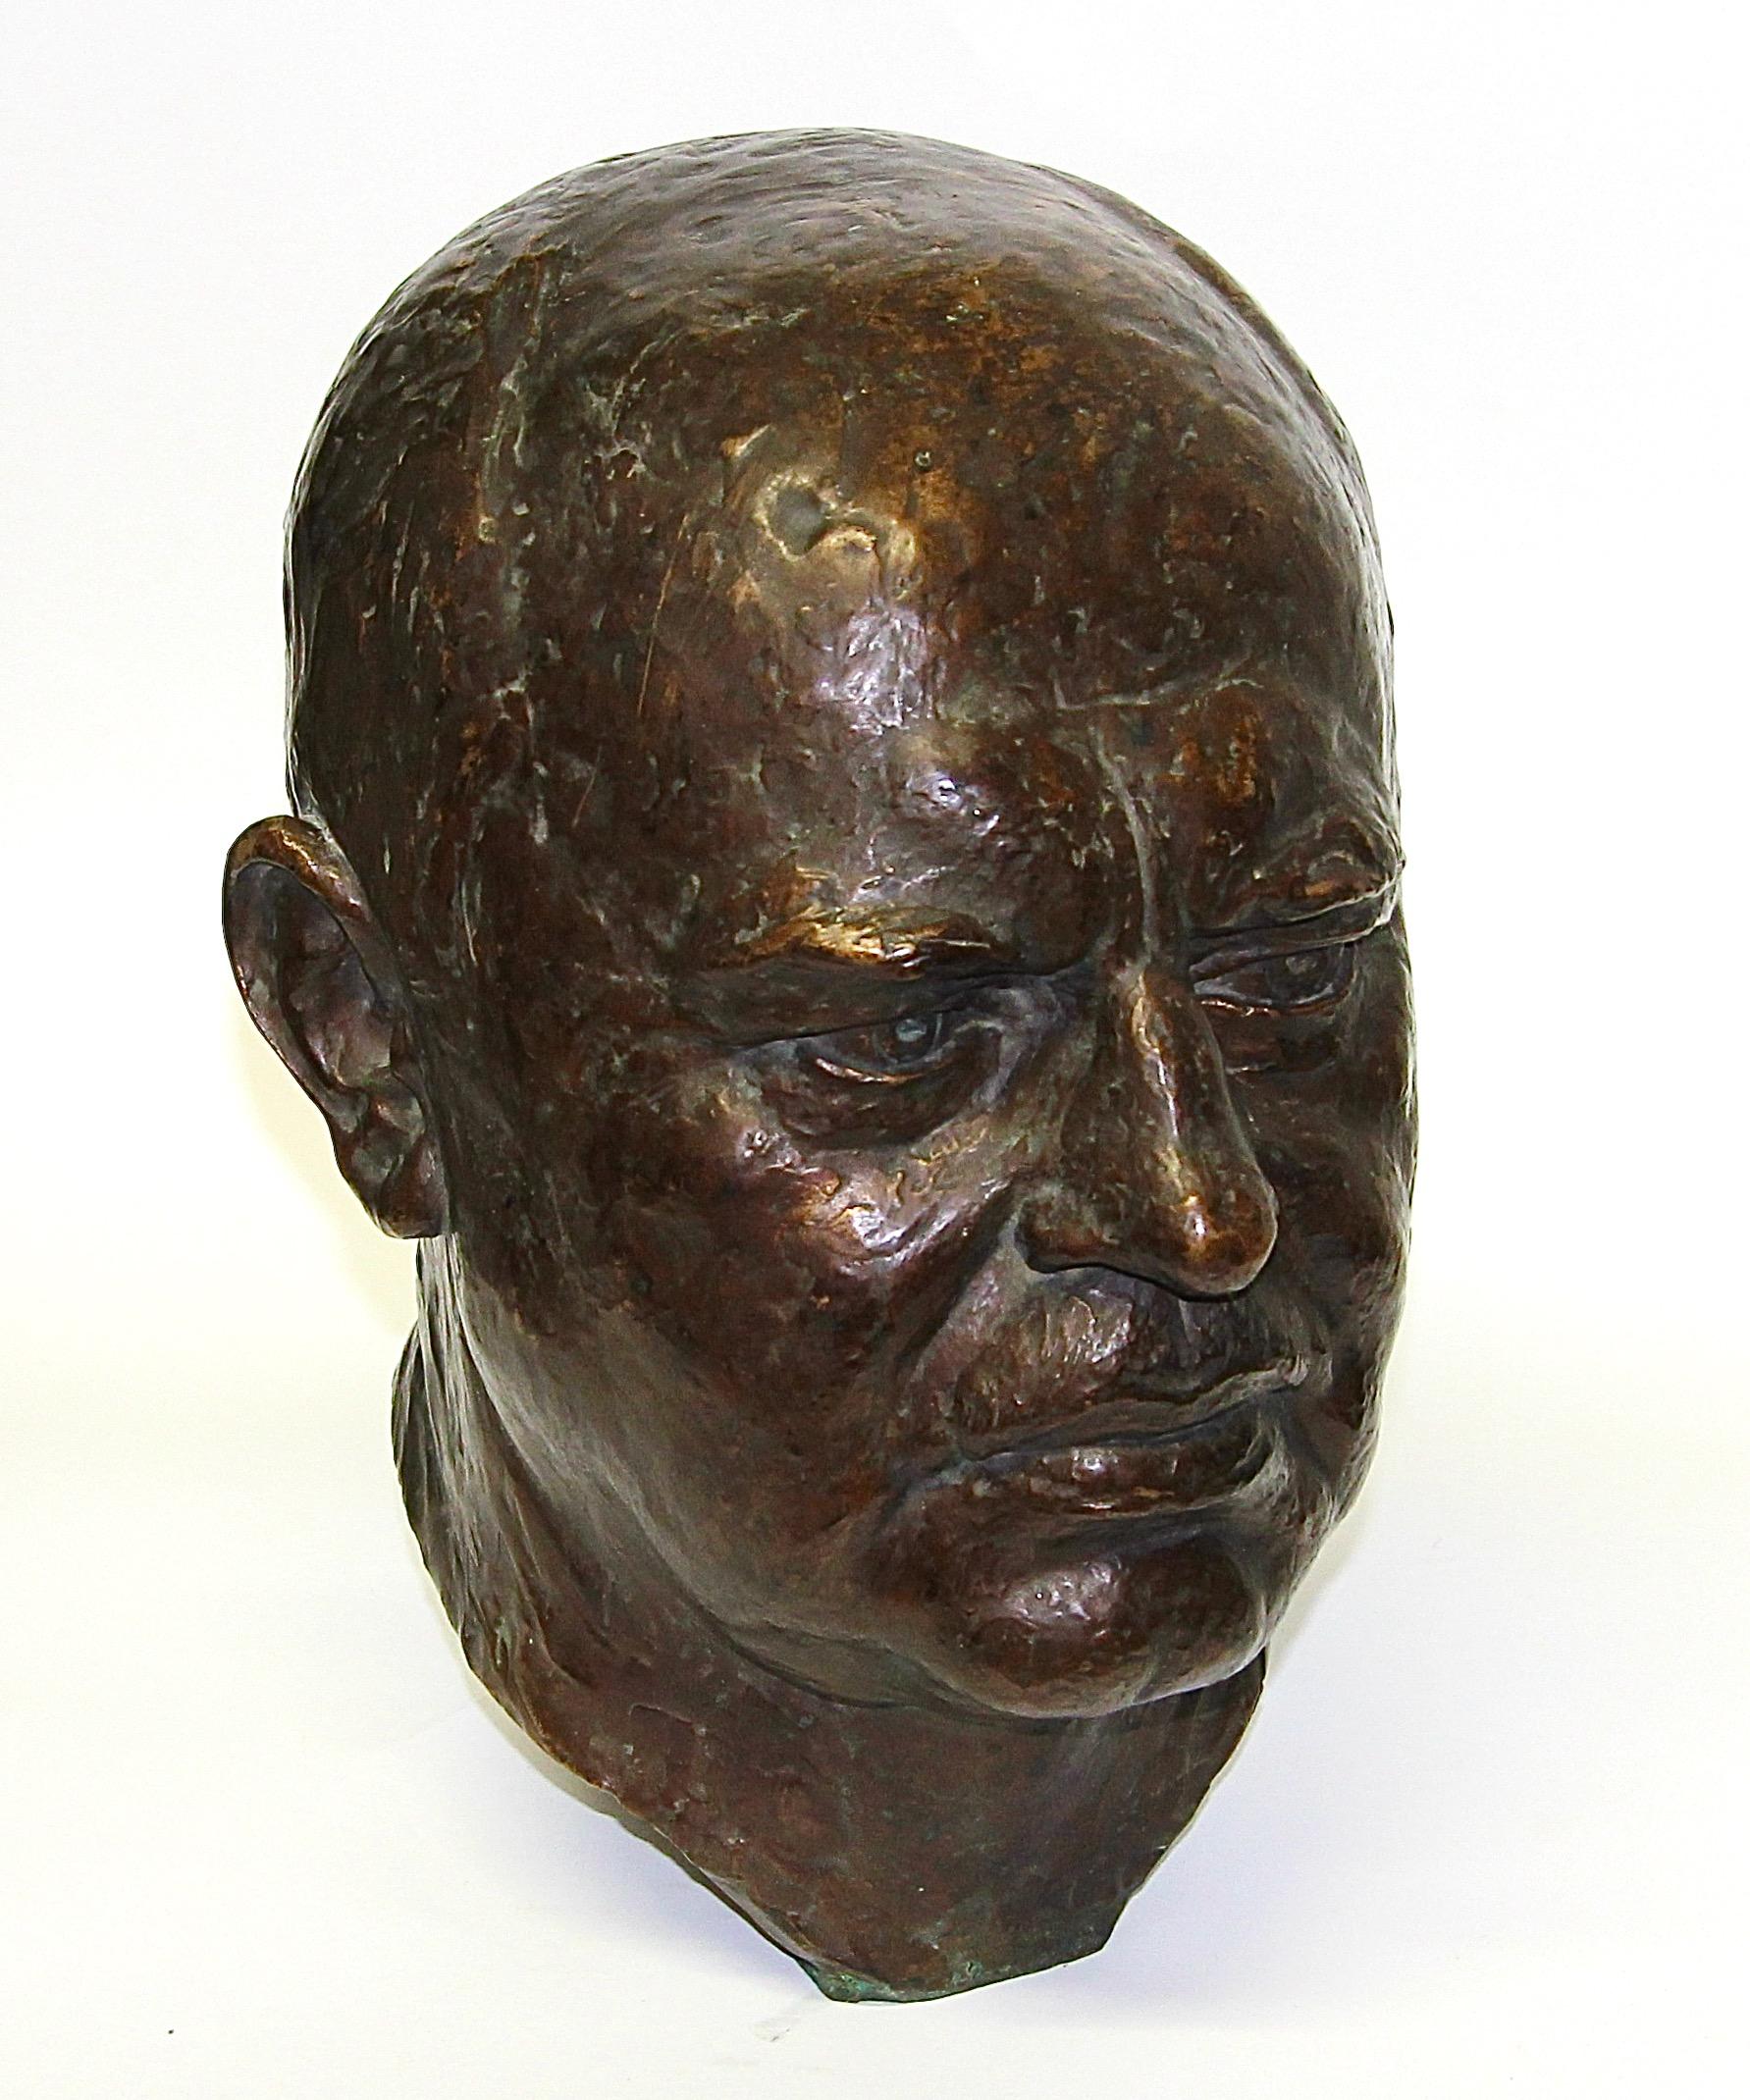 Detaillierte Bronzebüste, Skulptur eines Mannes, von Felix Georg Pfeifer, 1929

Felix Georg Pfeifer (geboren am 9. November 1871 in Leipzig; gestorben am 6. März 1945 dort) war ein deutscher Bildhauer und Medailleur.